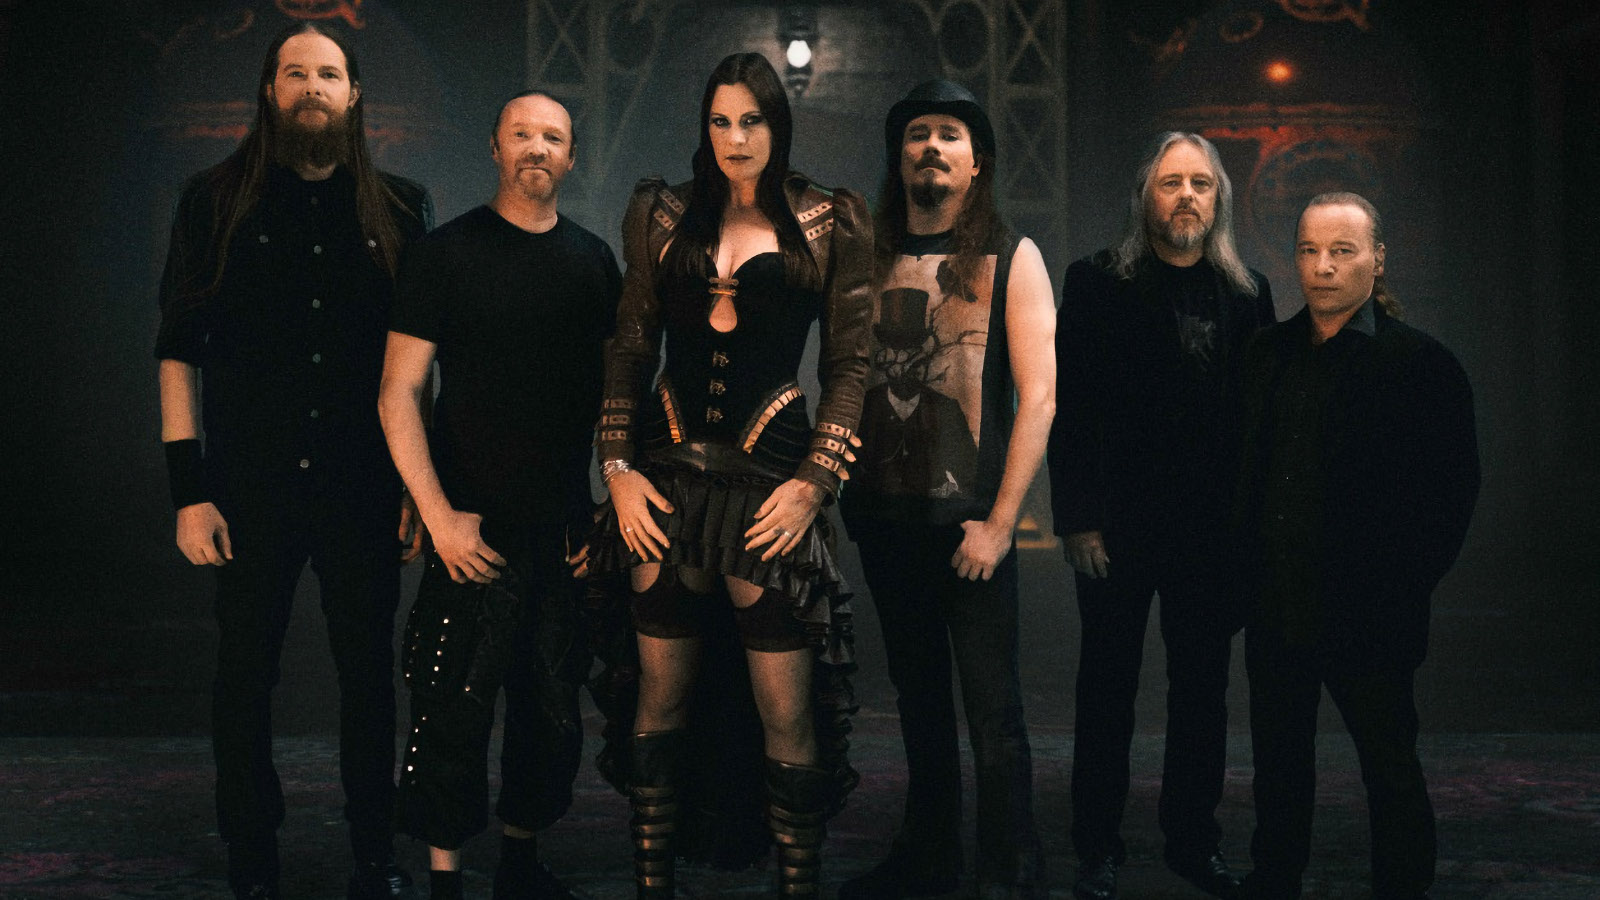 Kuvassa ovat Nightwish-bändin jäsenet yhteiskuvassa.  Kuvan sävy on tumma ja pukeutuminen on mustaa.